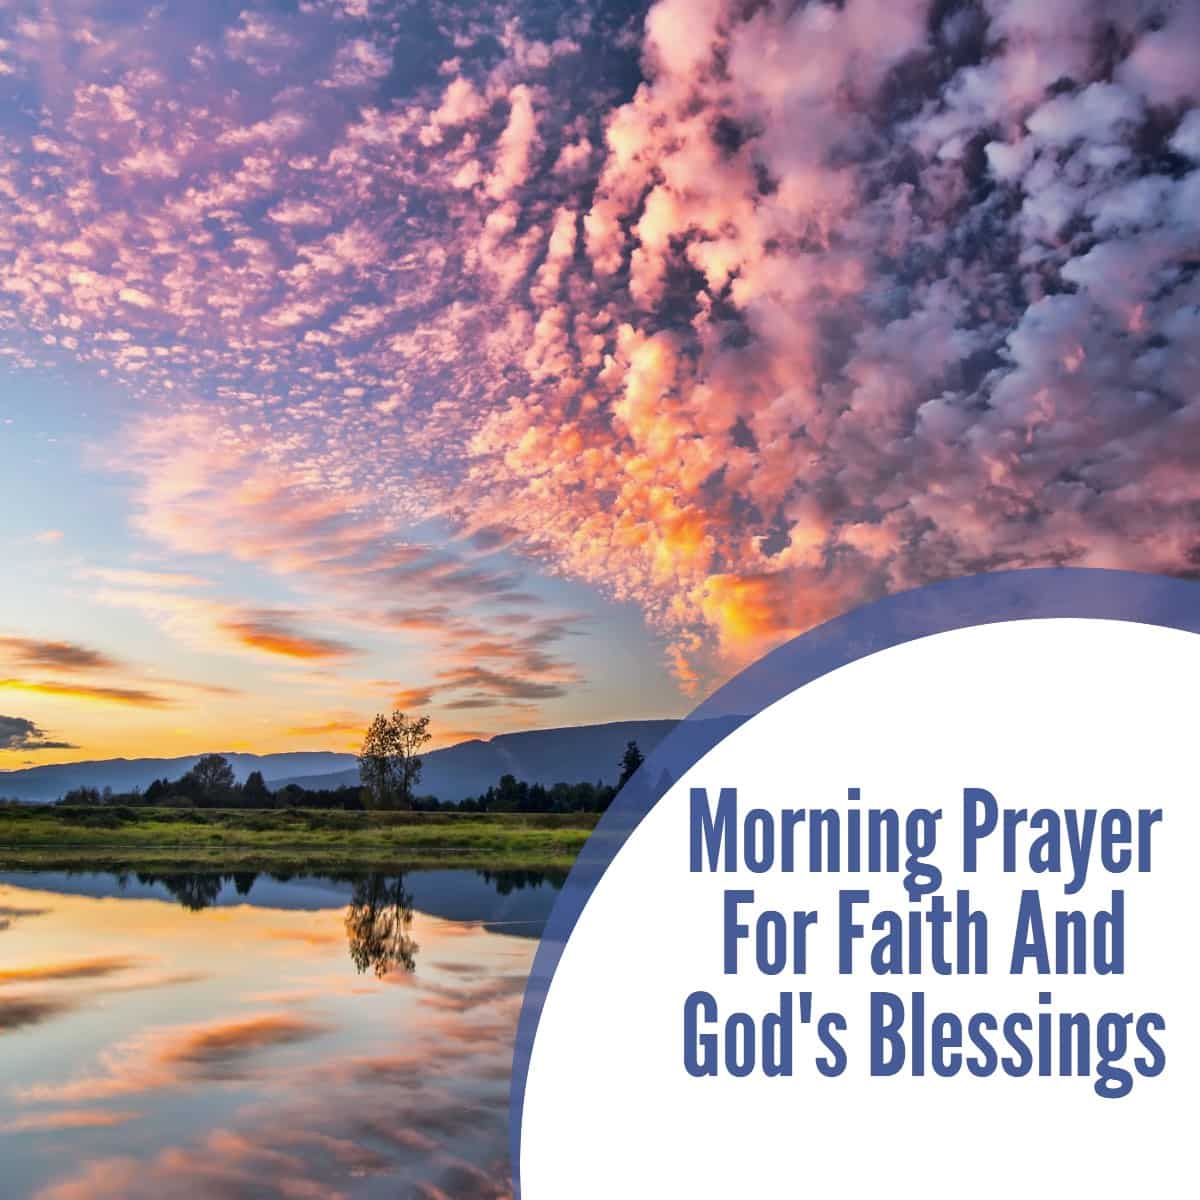 Morning Prayer For Faith And God's Blessings